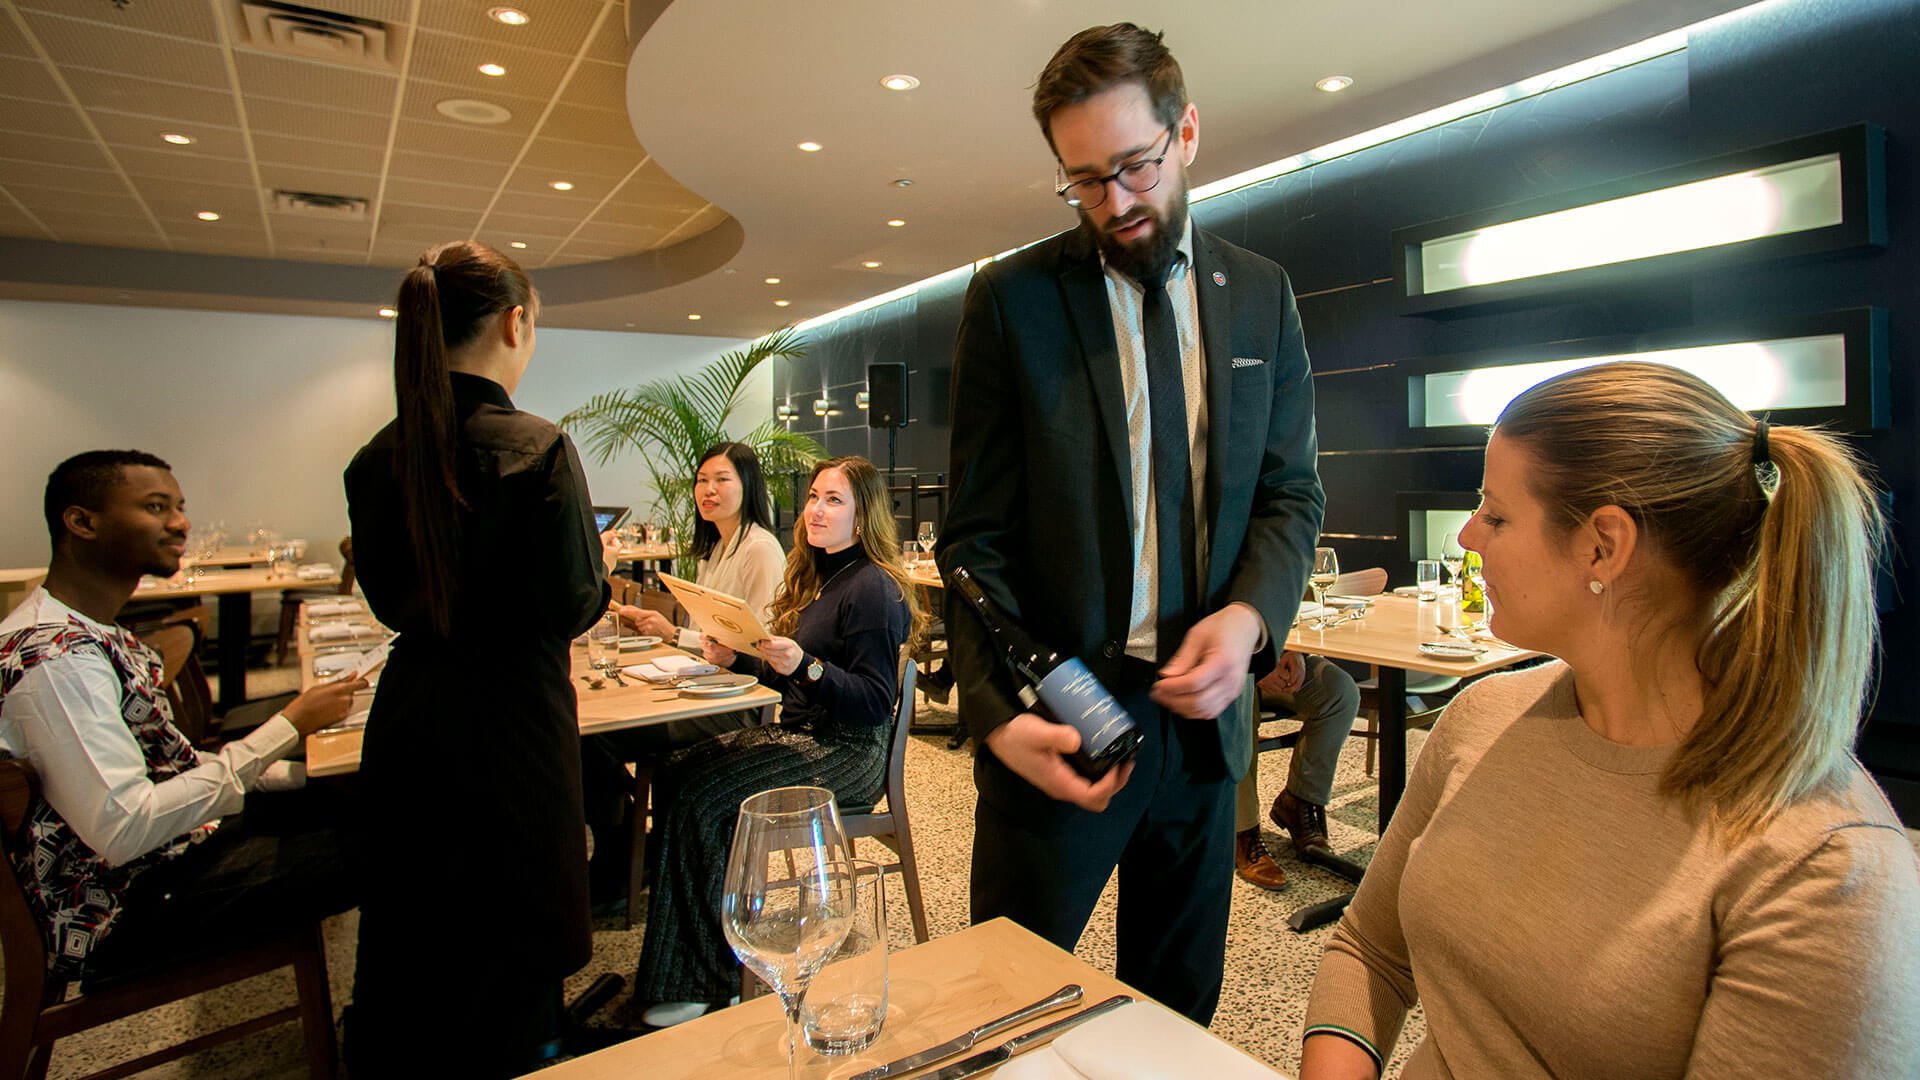 Un serveur s'occupe des invités dans un restaurant géré par un collège, enrichissant l'ambiance éducative avec une expérience de service pratique.